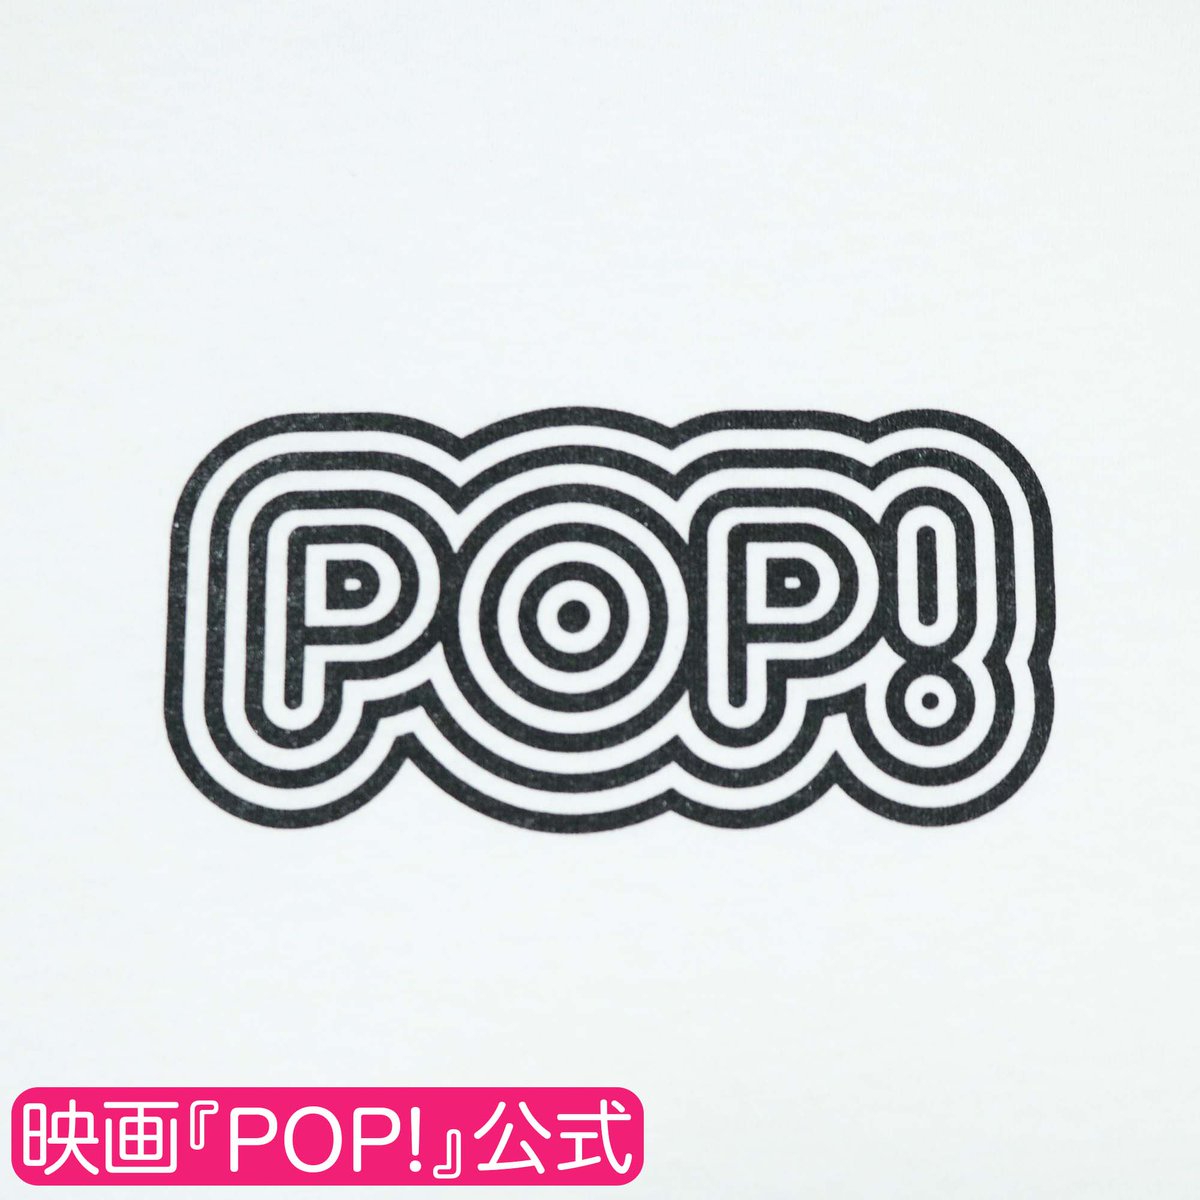 【FLaMme Mail Order】

＼映画『POP！』公式ロングTシャツ🌏／
“POP！”のロゴが入ったロンTはシンプルなデザインなので、自分なりにアレンジを加えて、“POP！”に着こなしてもいいかも👍
ふだん着としても、ルームウエアとしても活躍するはず🕺‼️

#小野莉奈 #野村麻純

🛒shop.fannect.jp/flamme/syousai…